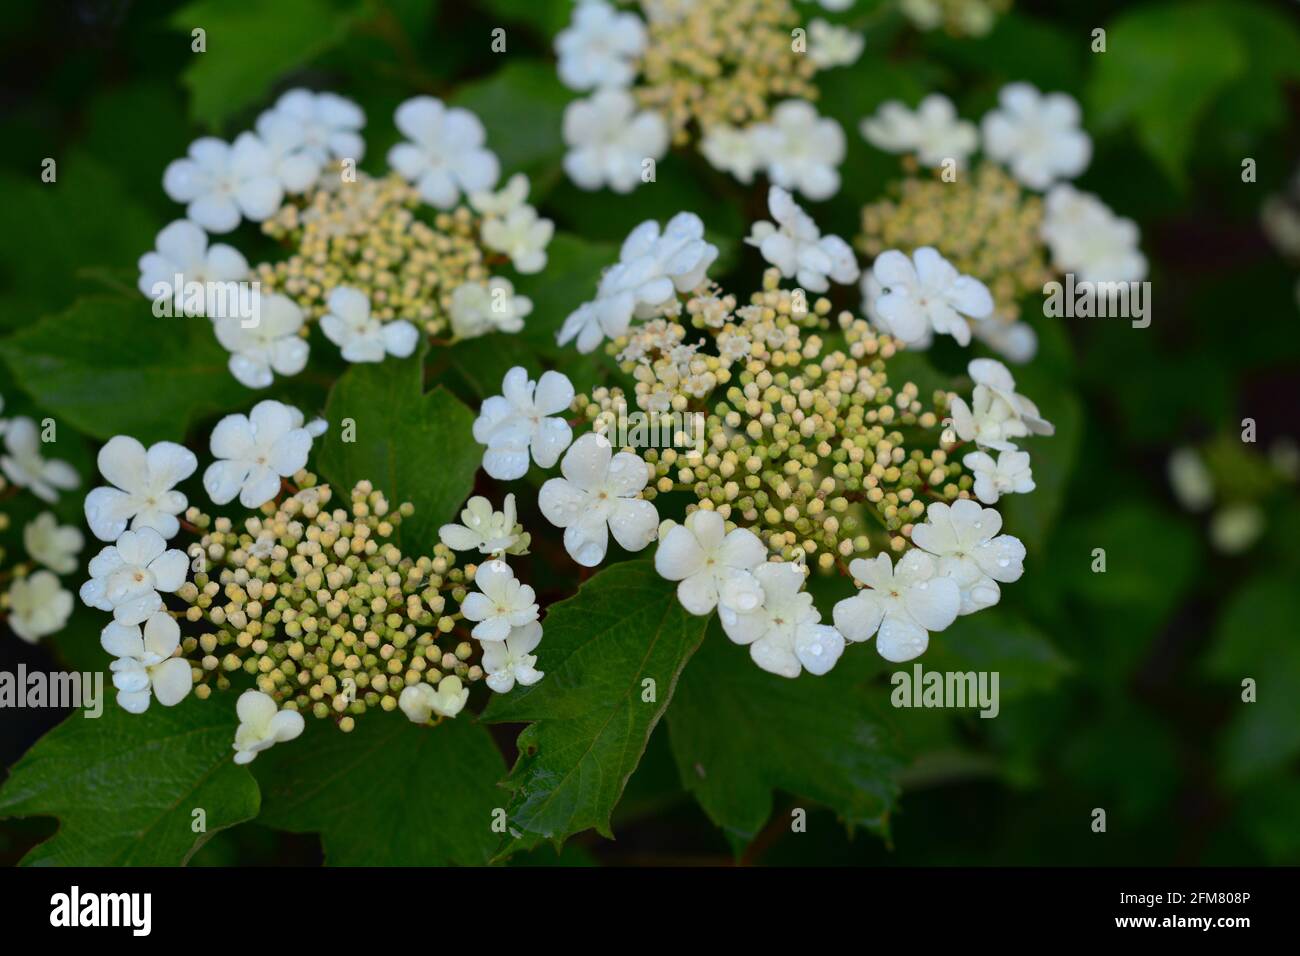 Viburnum trilobum, or highbush cranberry blooming. Viburnum trilobum's white flowers, blossom, inflorescence in spring. Stock Photo